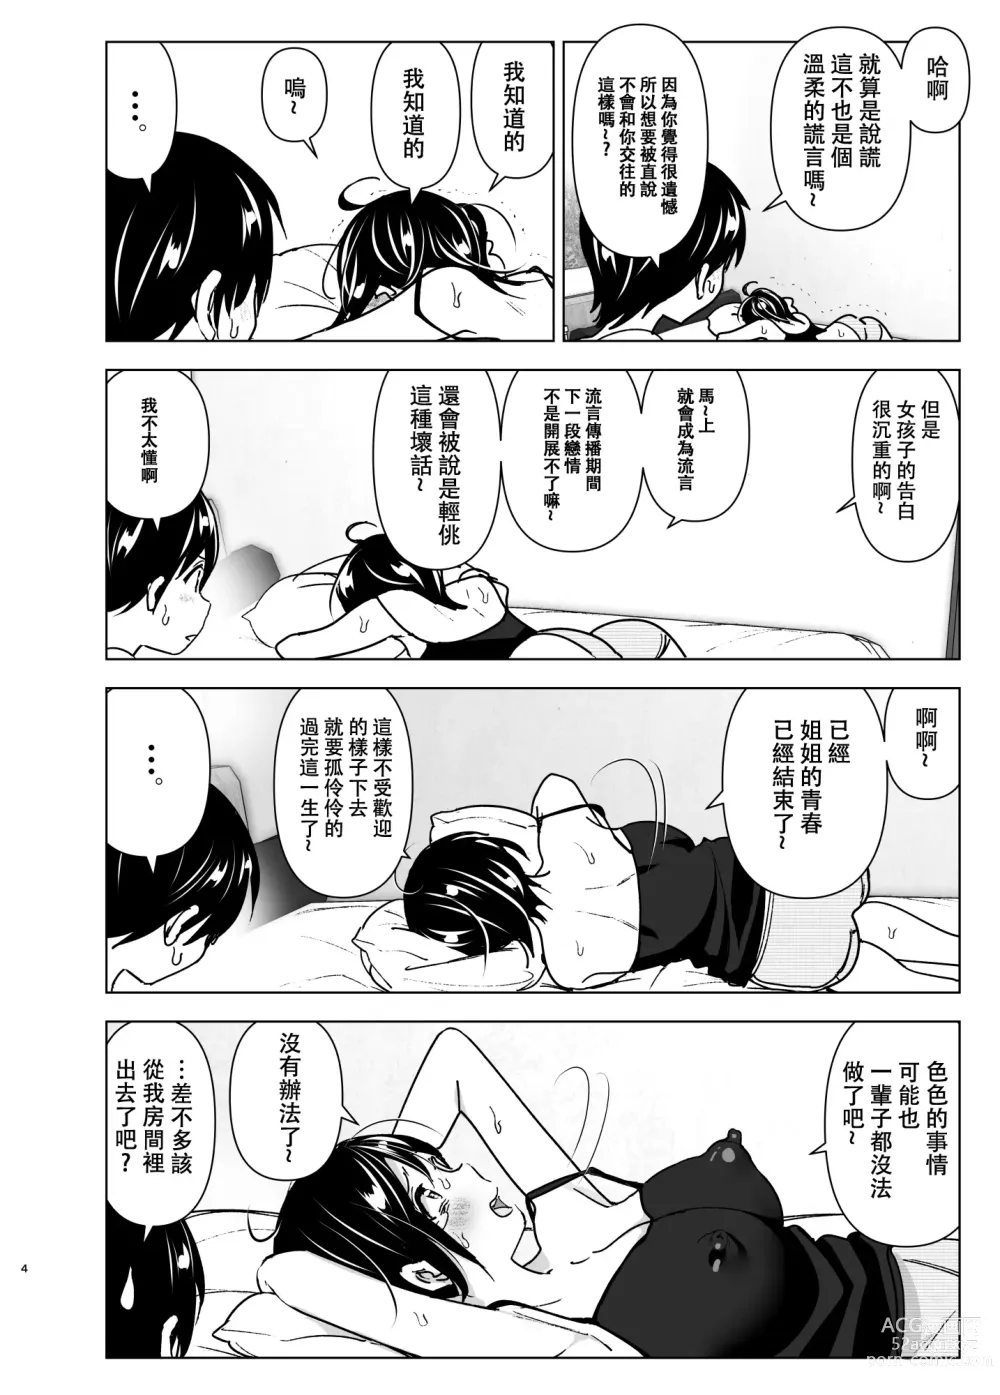 Page 3 of doujinshi 姐姐與傾聽抱怨的弟弟的故事 (decensored)